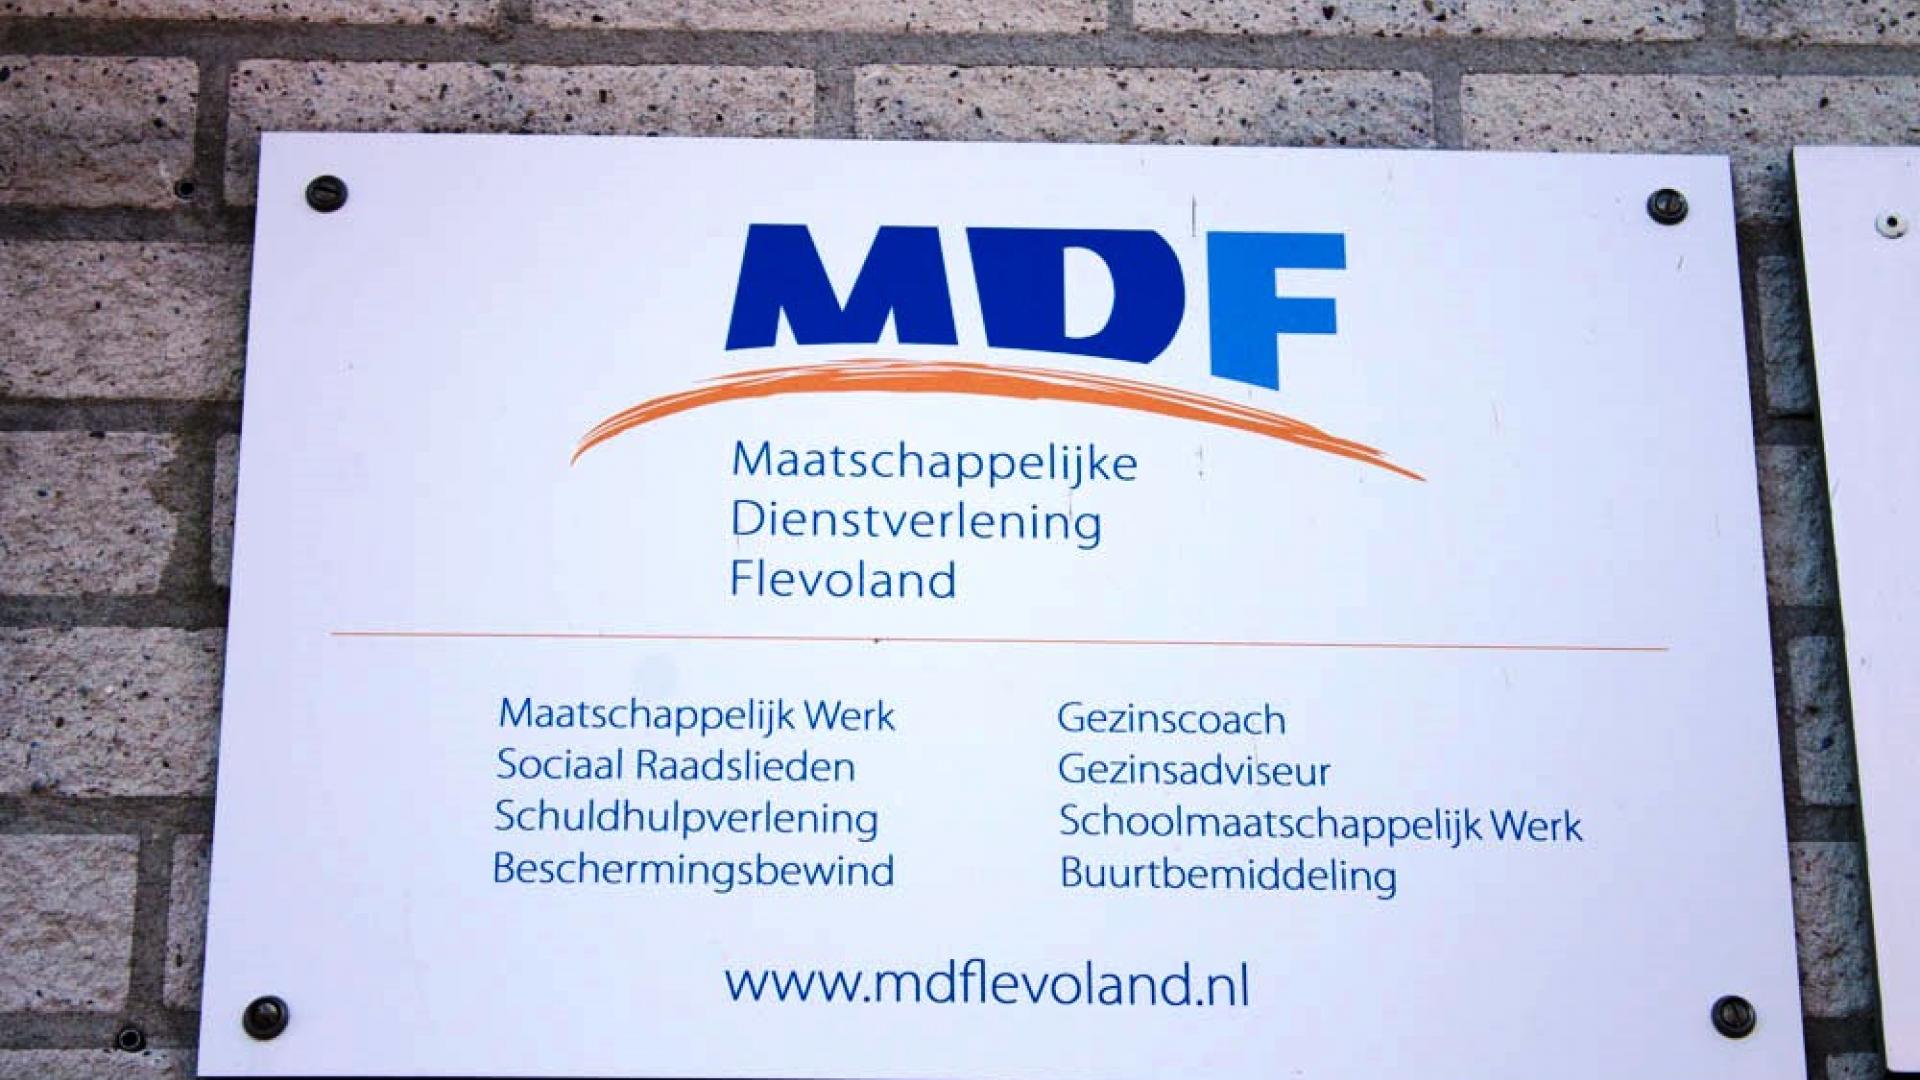 Maatschappelijke Dienstverlening Flevoland